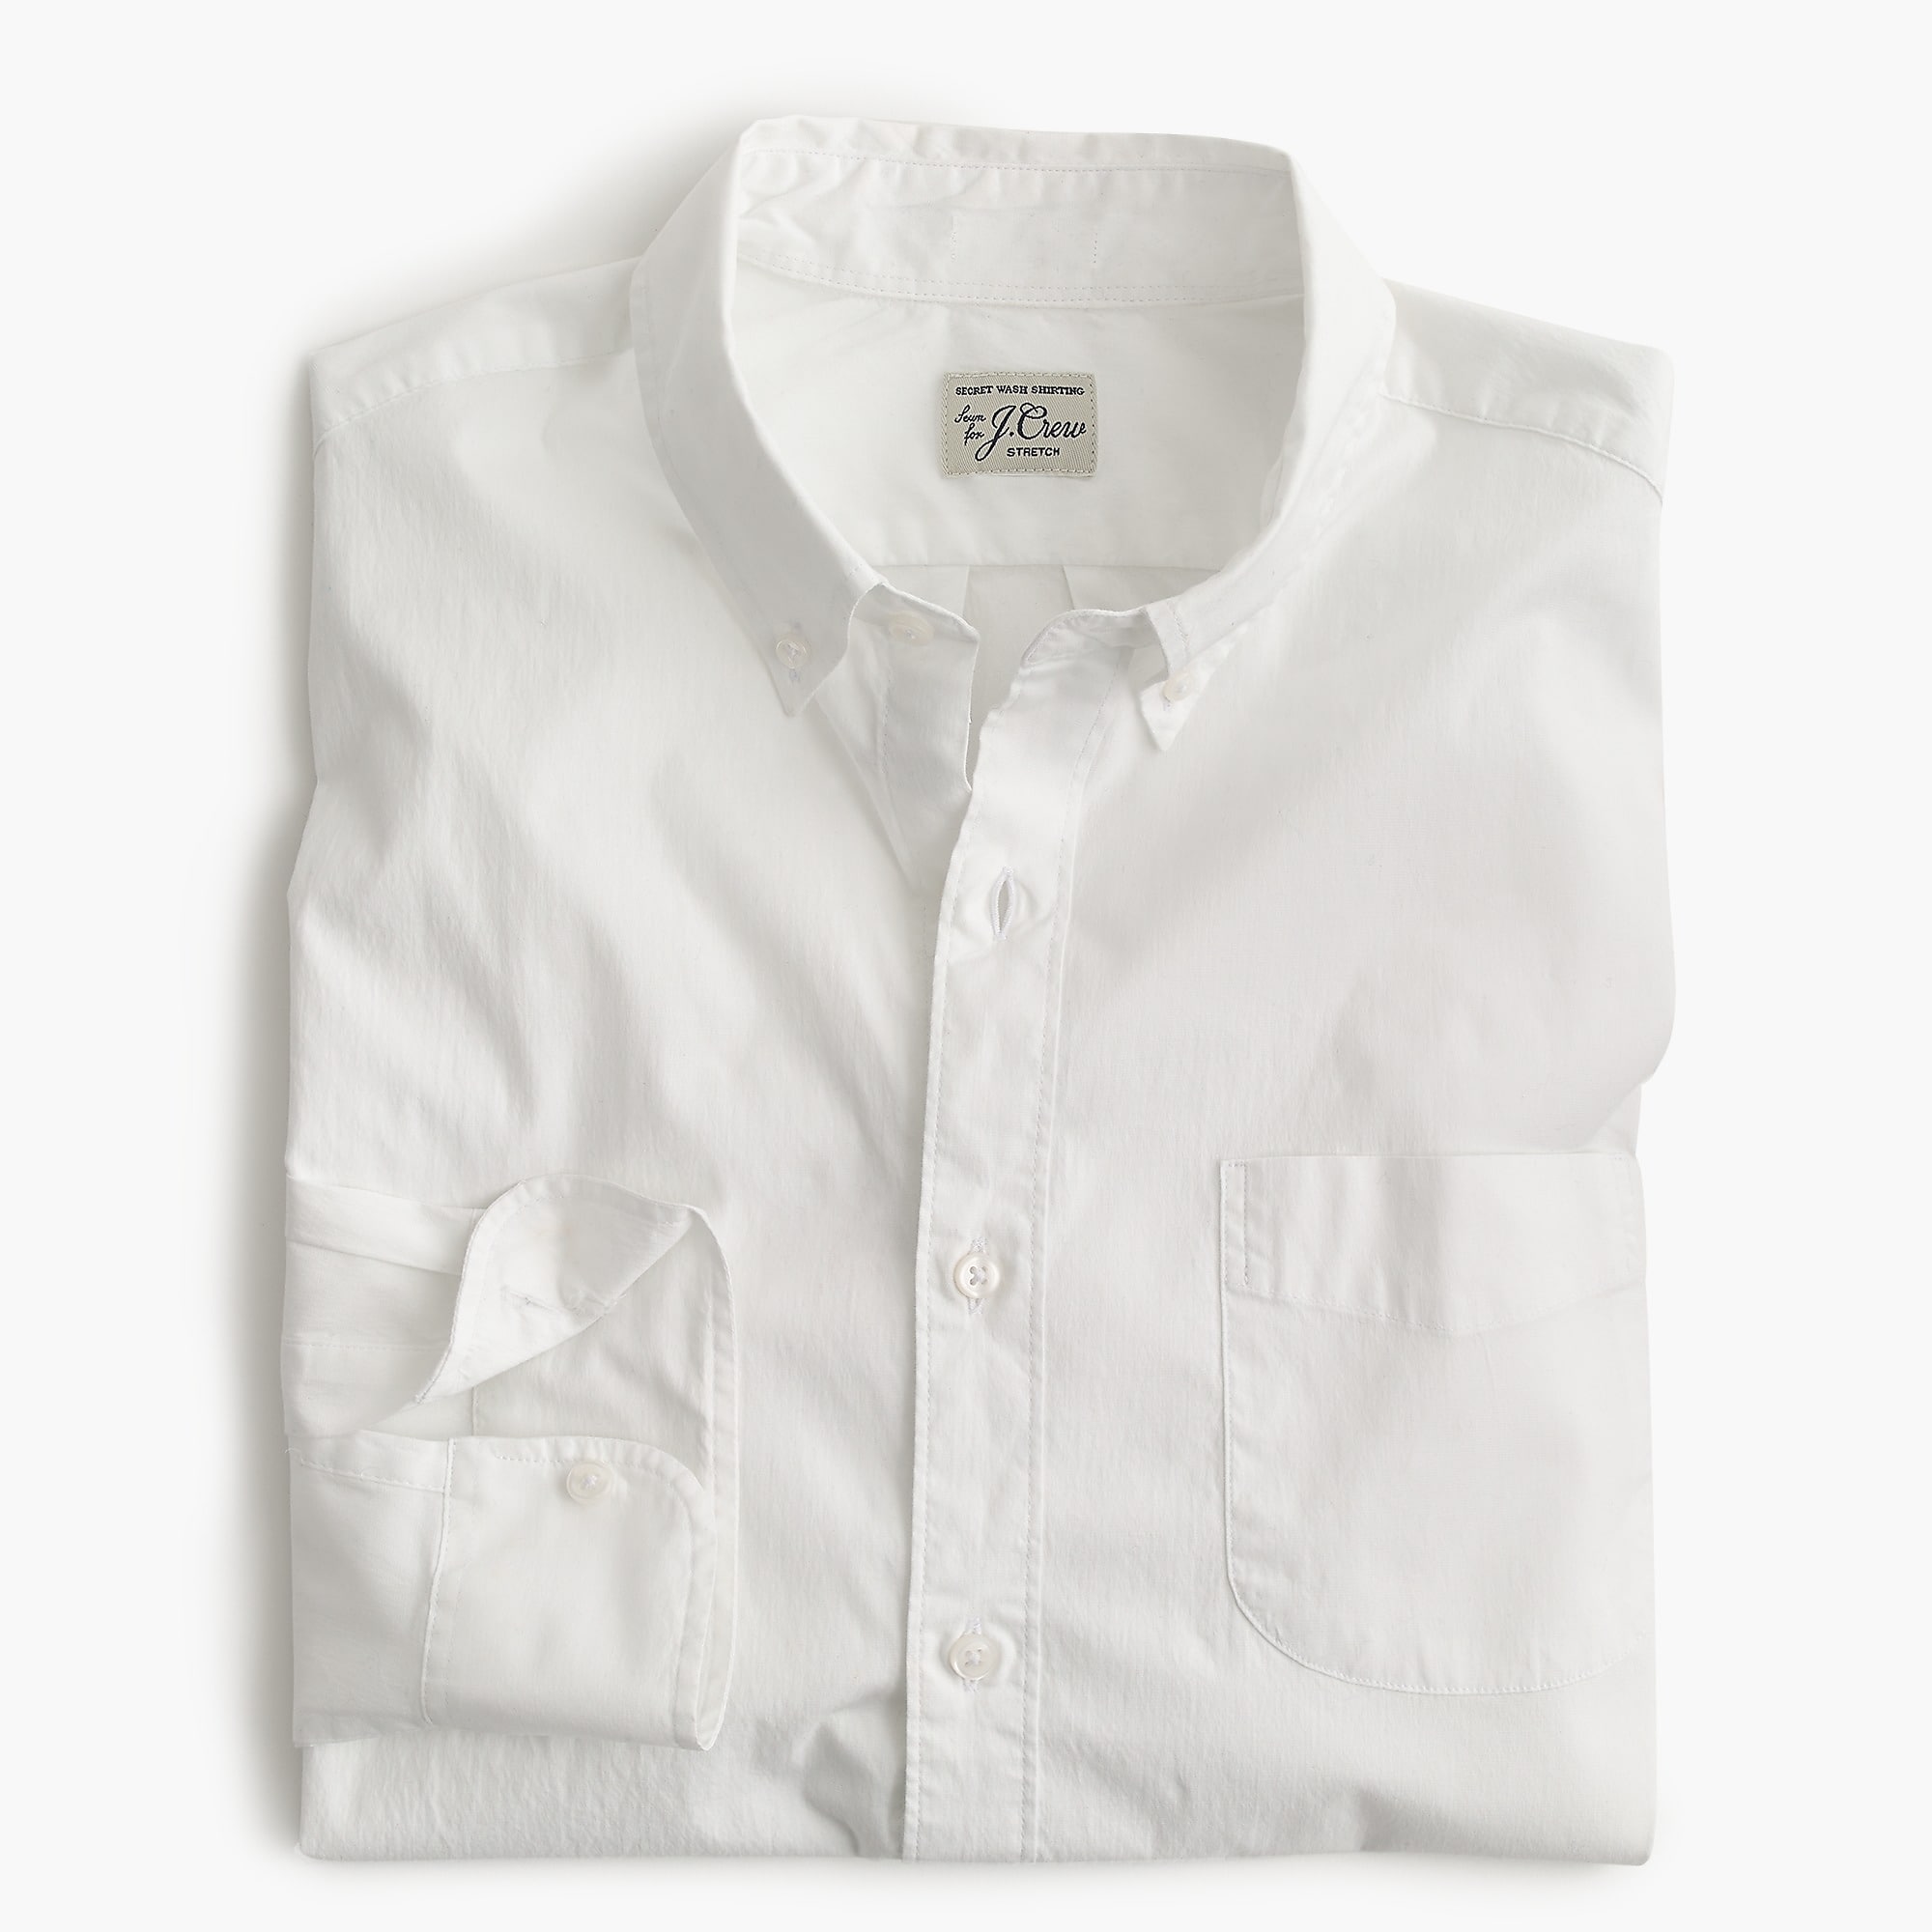  Slim Untucked stretch Secret Wash shirt in white poplin